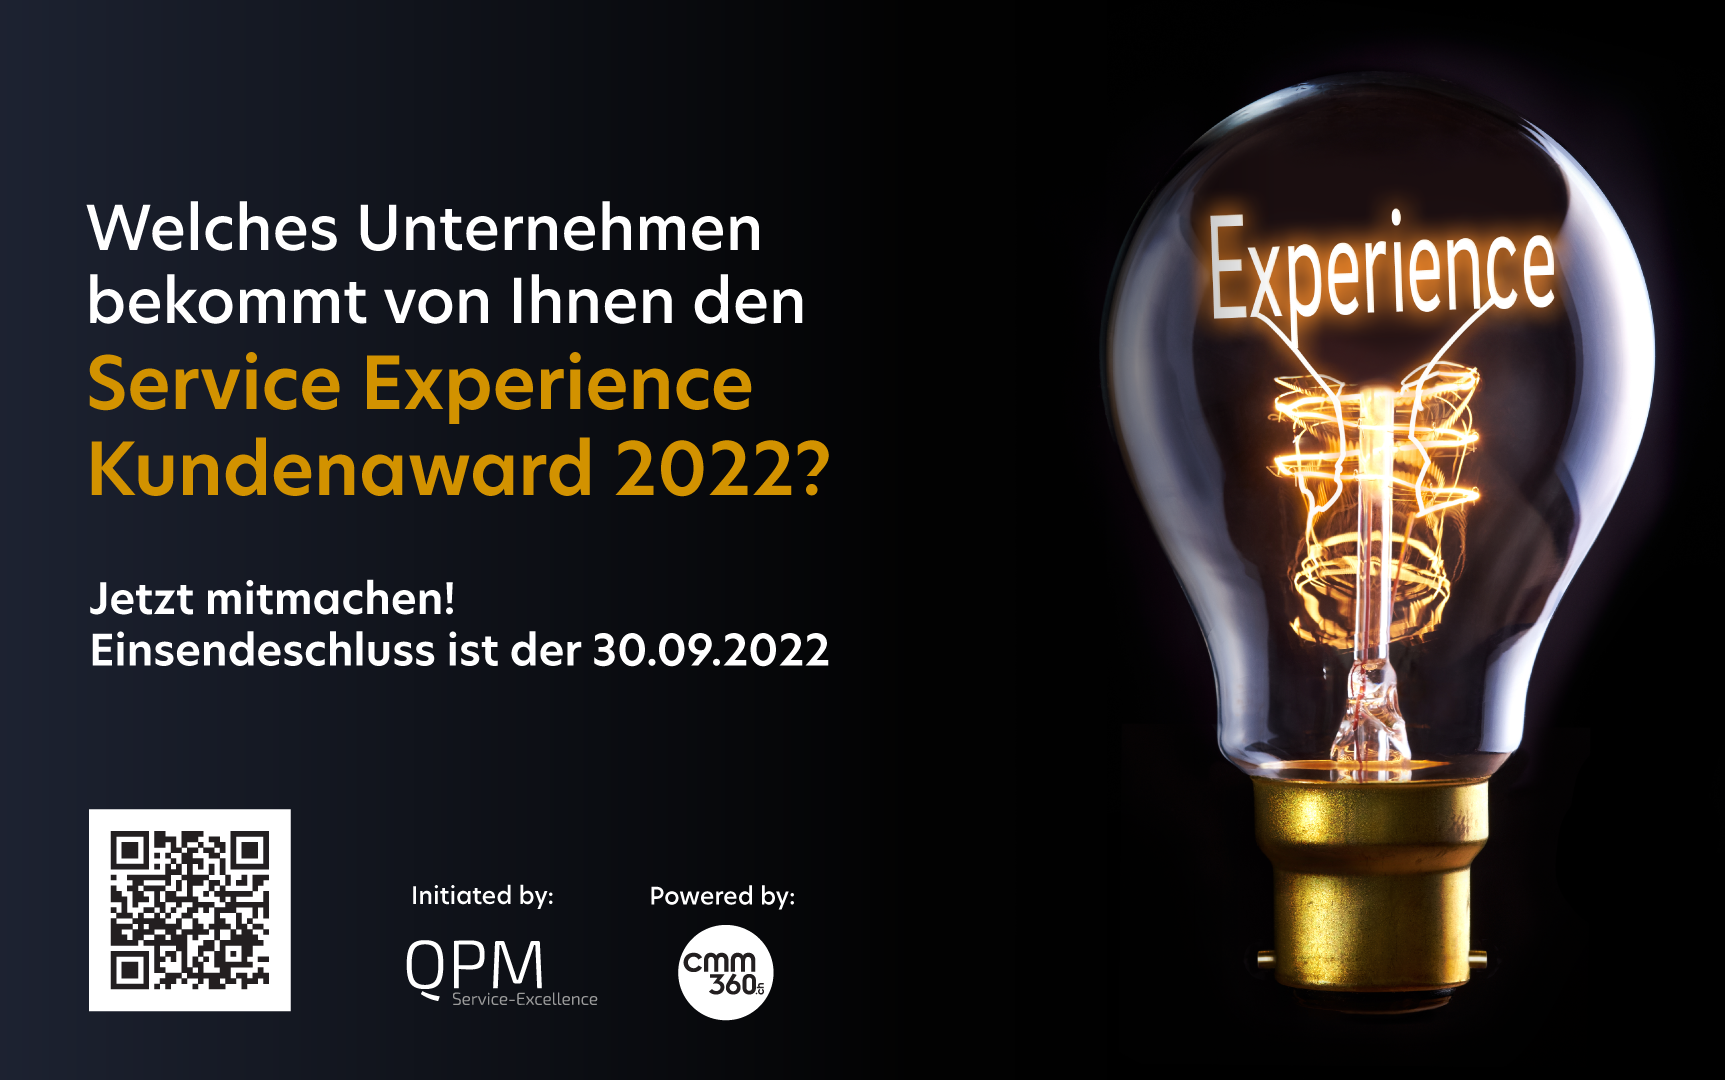 Service Experience Award 2022 - der Schweizer Kundenaward_QPM Marketing Service_cmm360